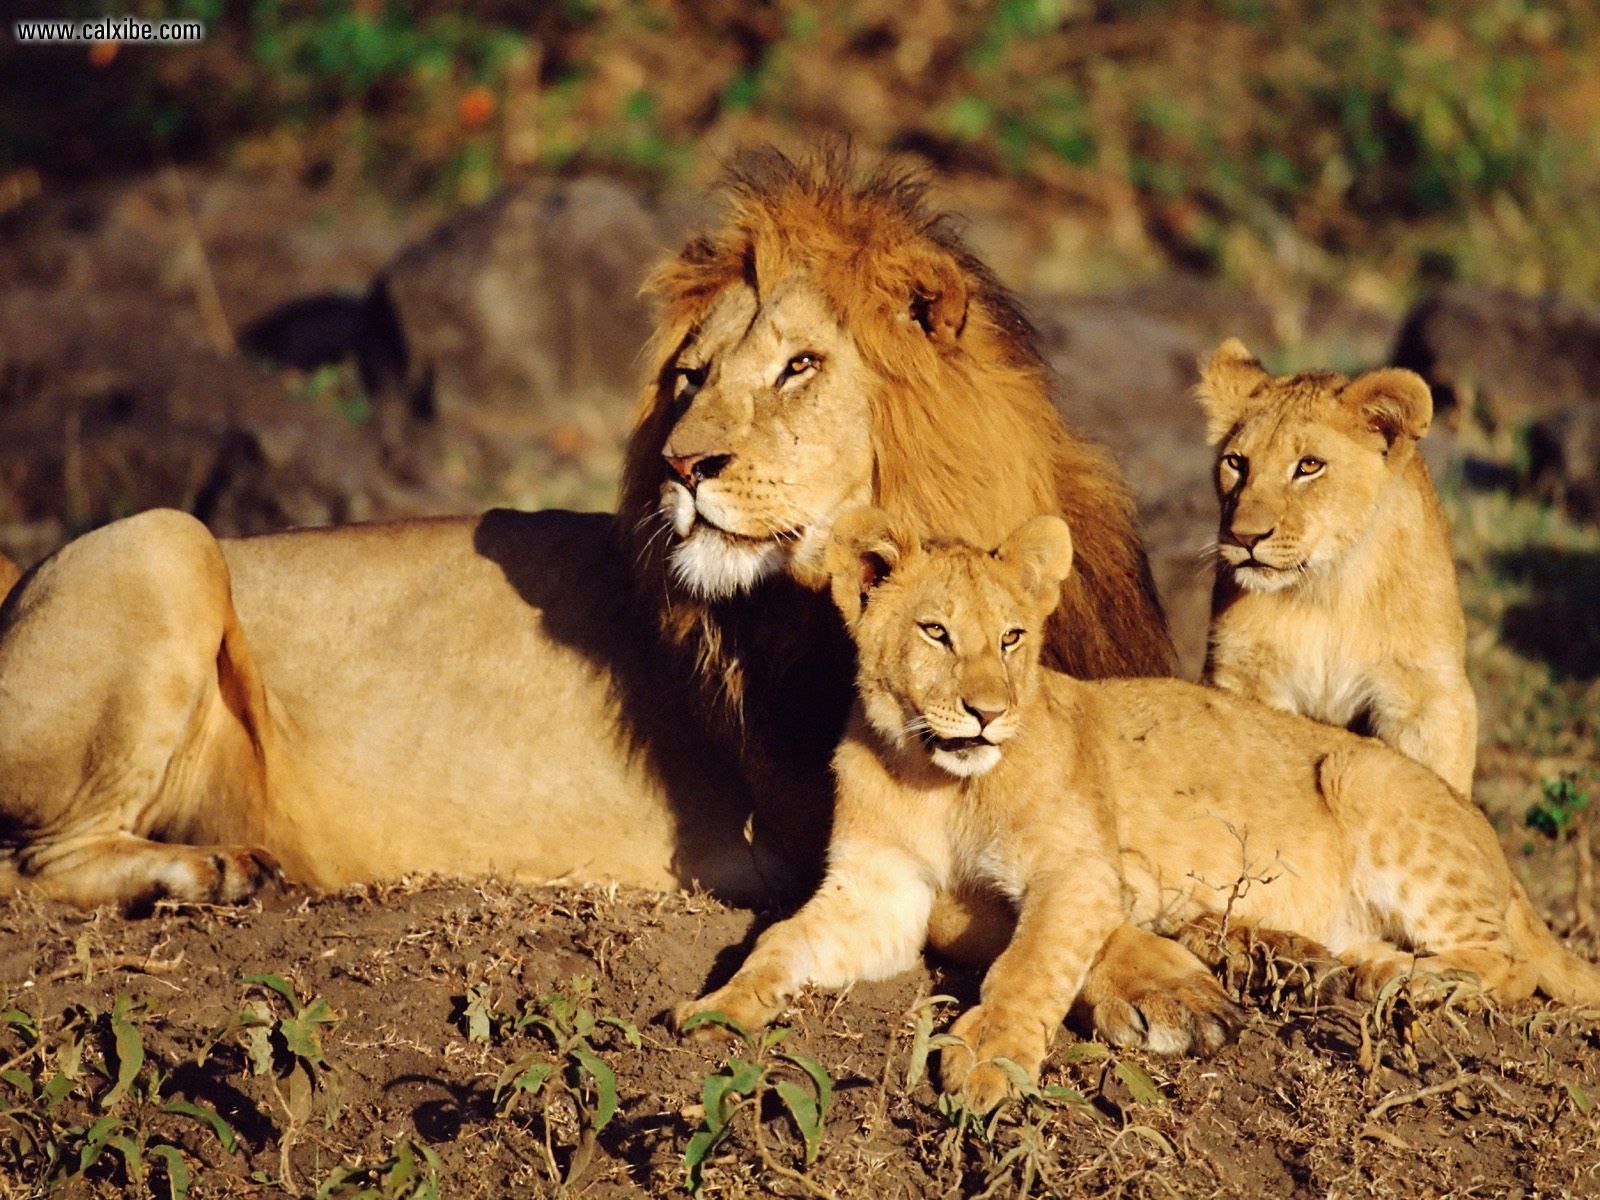 http://3.bp.blogspot.com/-Ia97ND_vEgk/Tj3ZbfsnbwI/AAAAAAAAAKg/ou2IO8VqhqI/s1600/African_Lions_Masai_Mara_Kenya.jpg